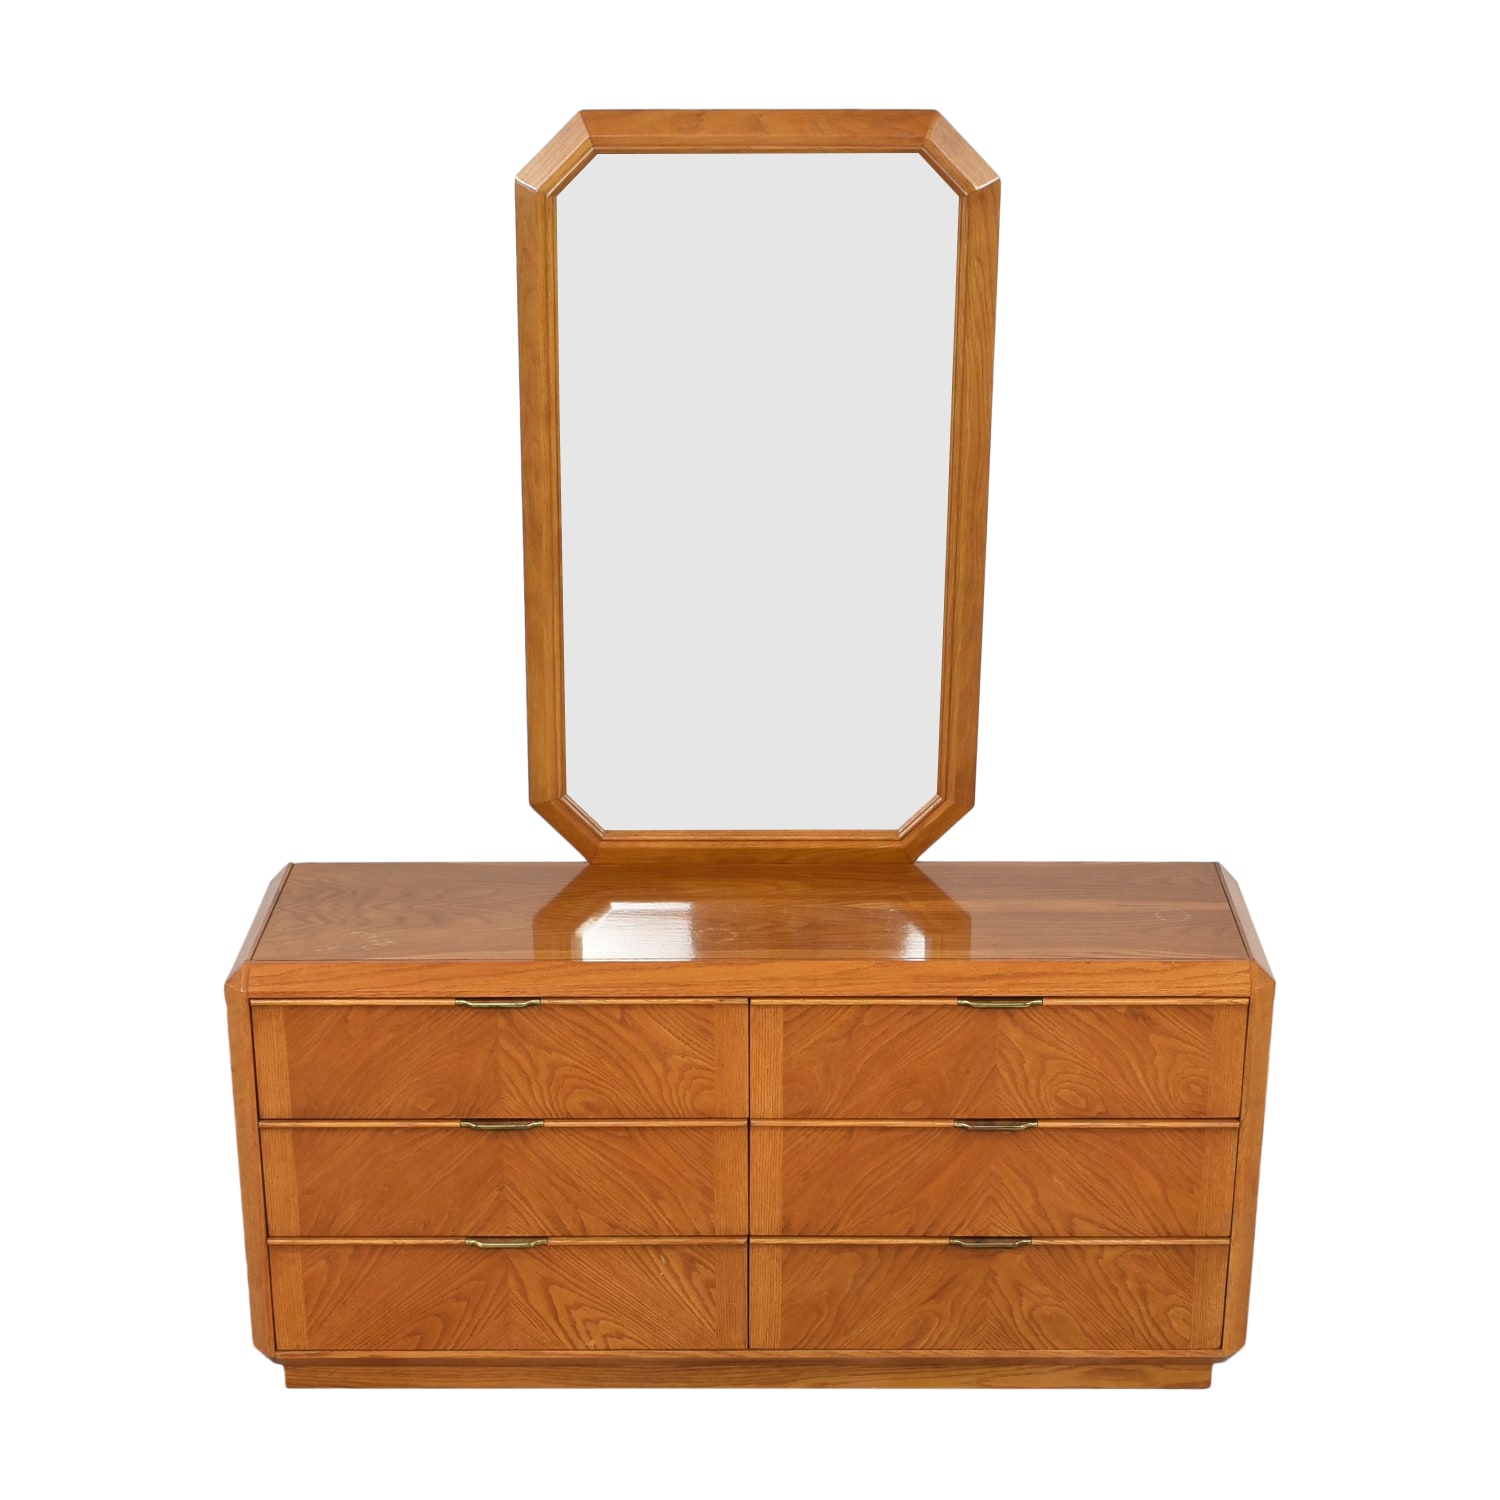 Stanley Furniture Stanley Furniture Modern Dresser with Mirror nj